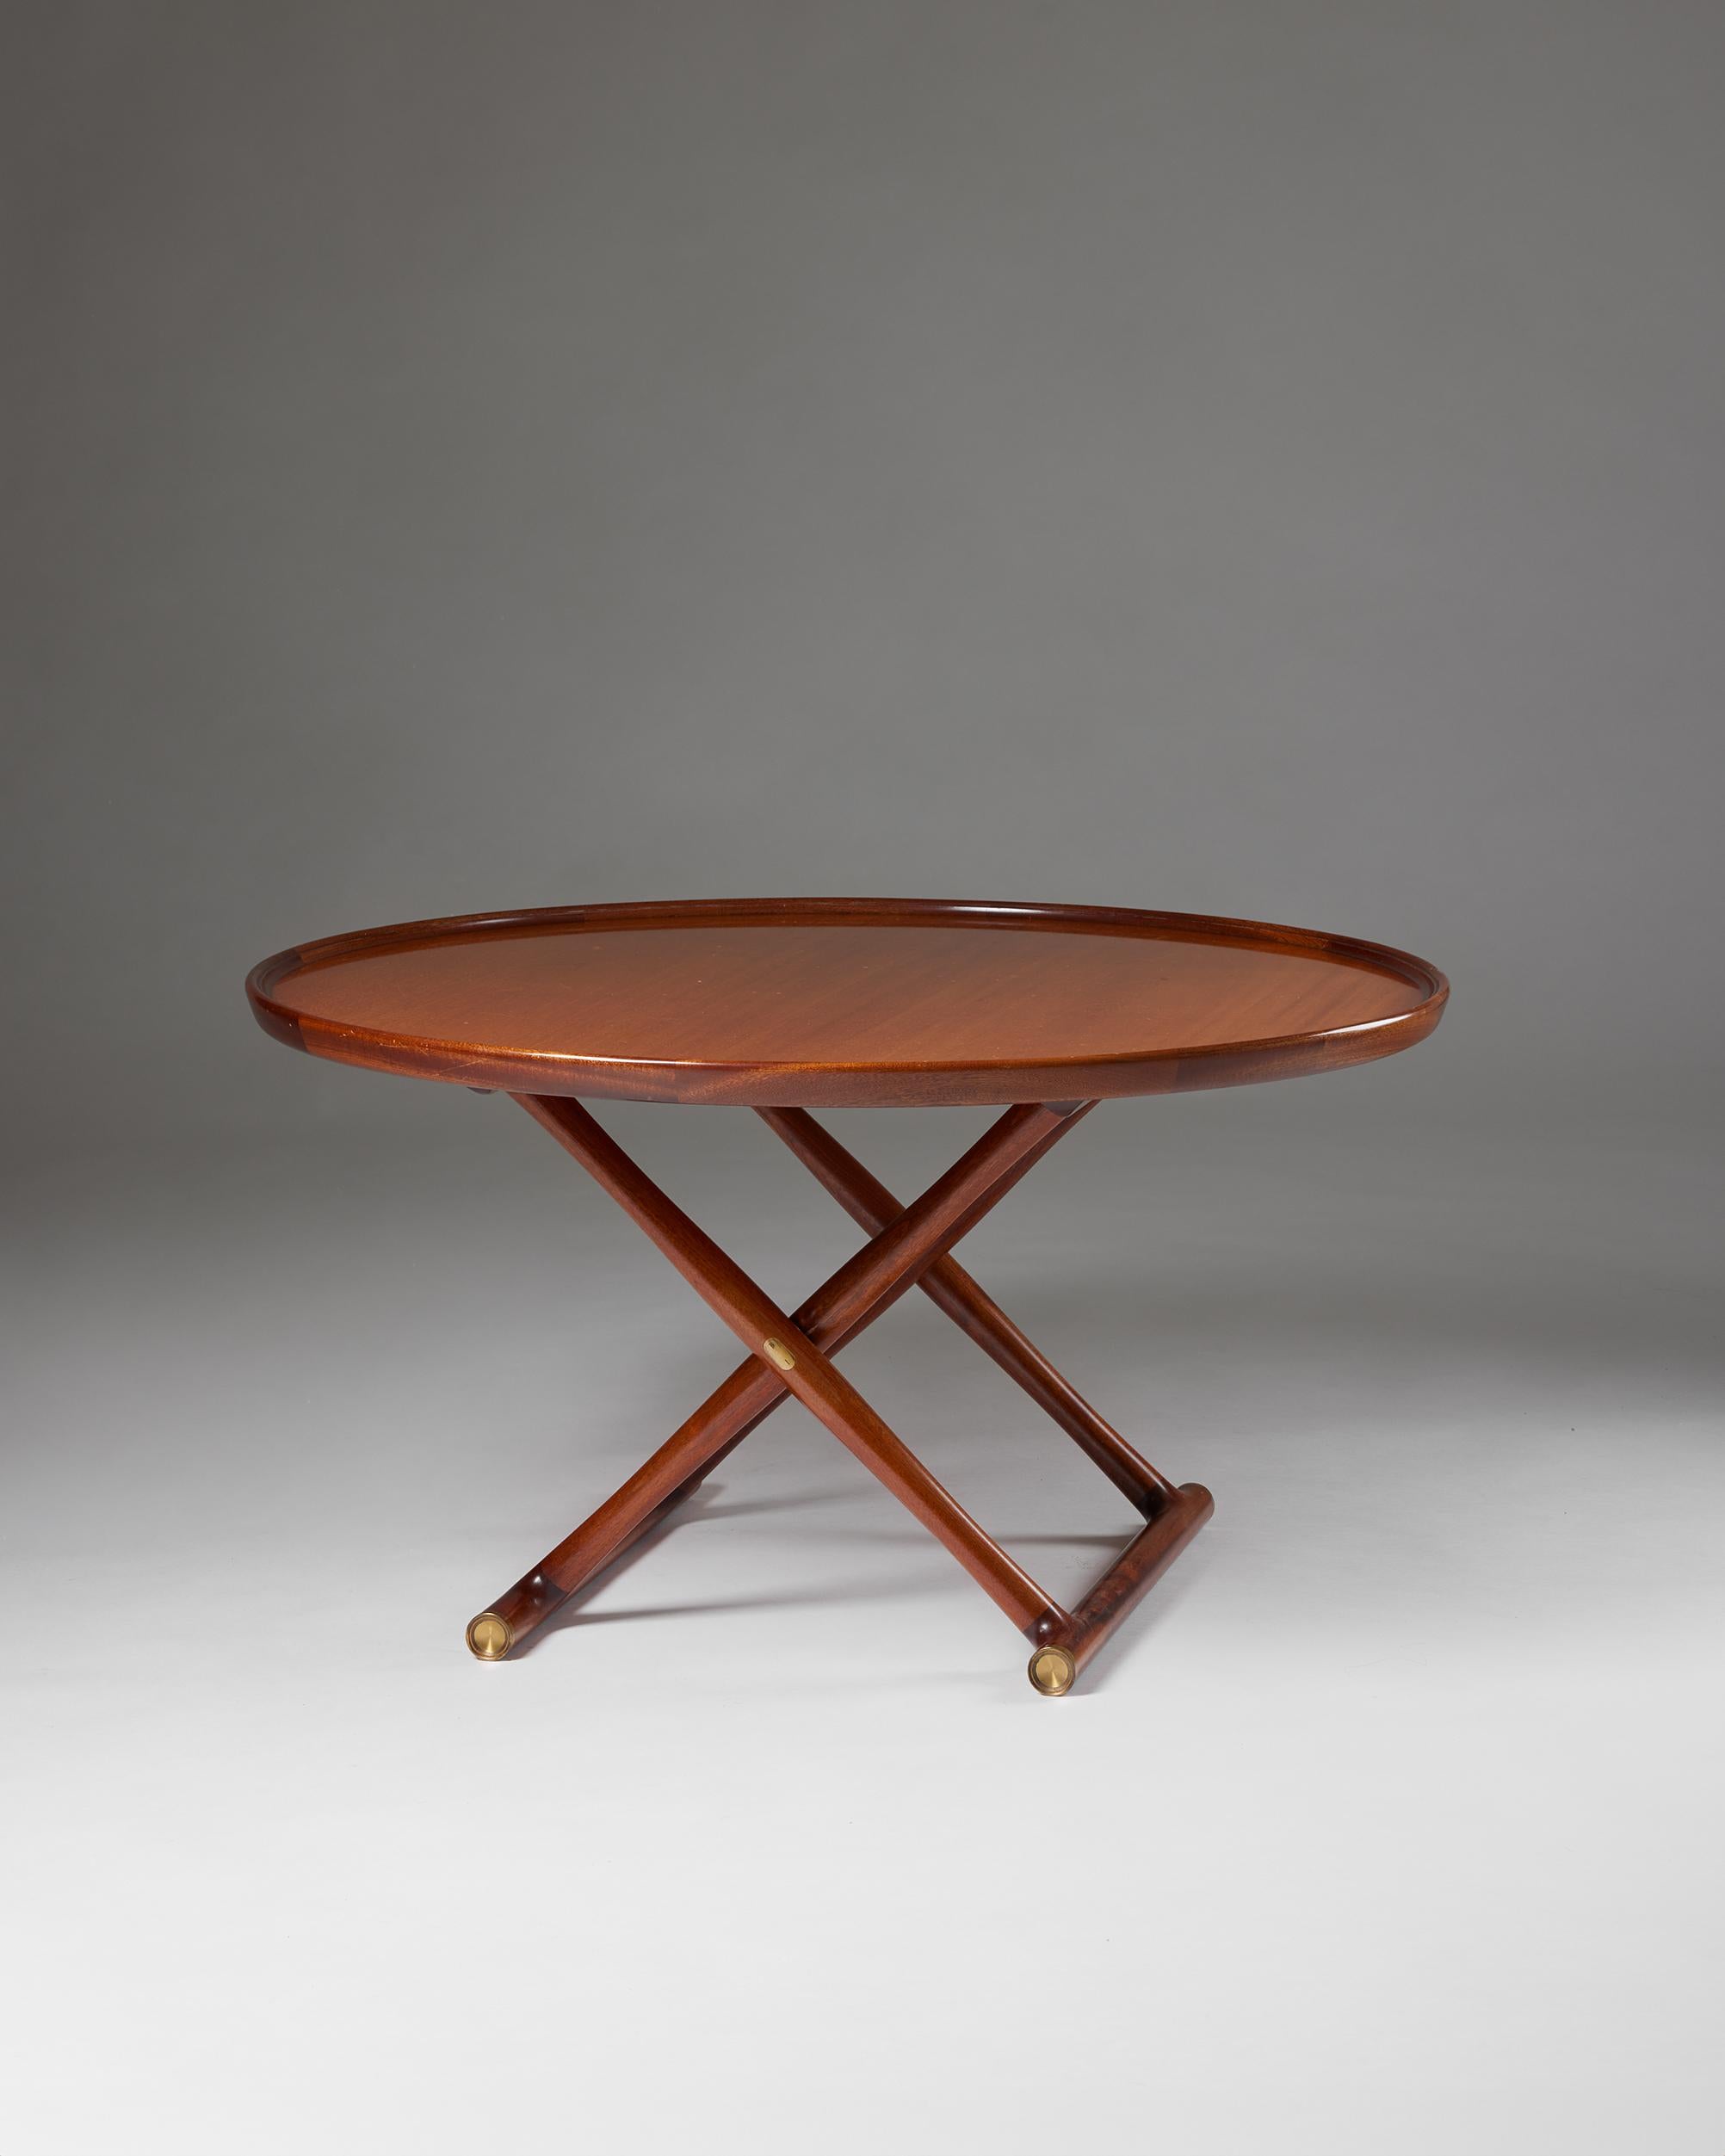 Beistelltisch 'The Egyptian table', entworfen von Mogens Lassen für Rud Rasmussen,
Dänemark, 1935.

Mahagoni, klappbarer Rahmen und Platte mit erhöhtem Rand, Messingbeschläge.

Mit diesem Beistelltischmodell schuf Mogens Lassen eine Ikone des